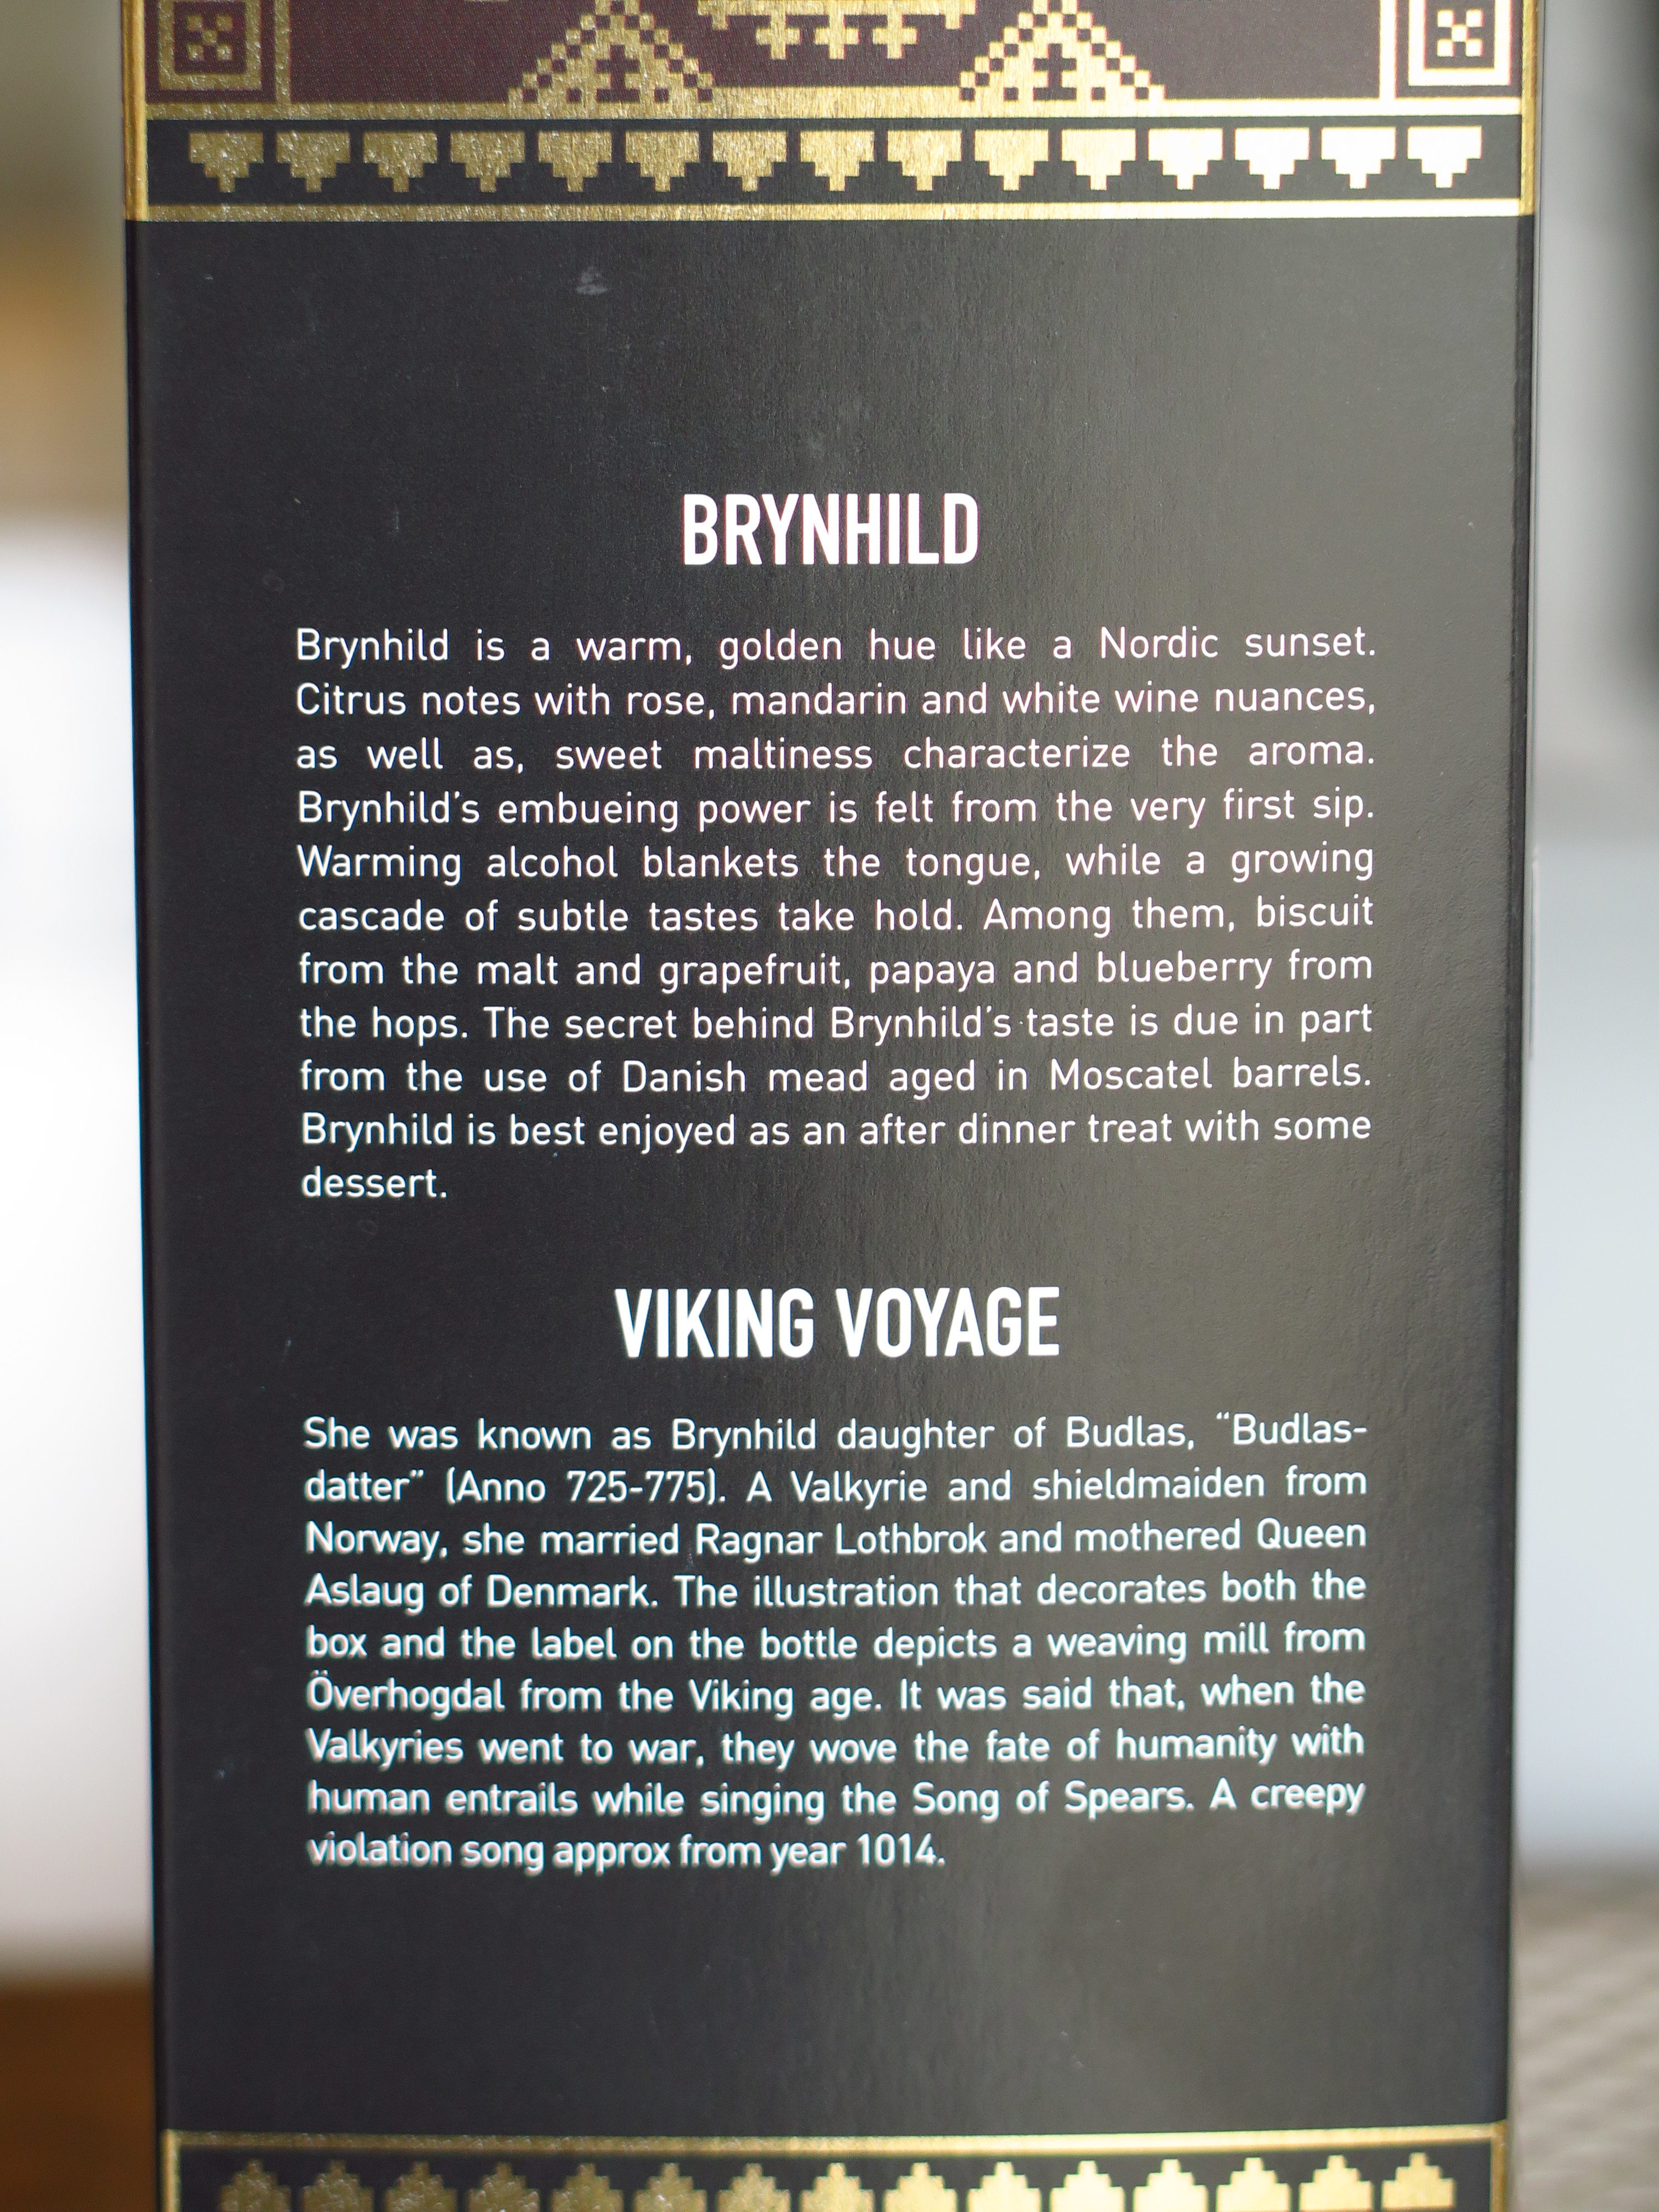 Brynhild viking voyage